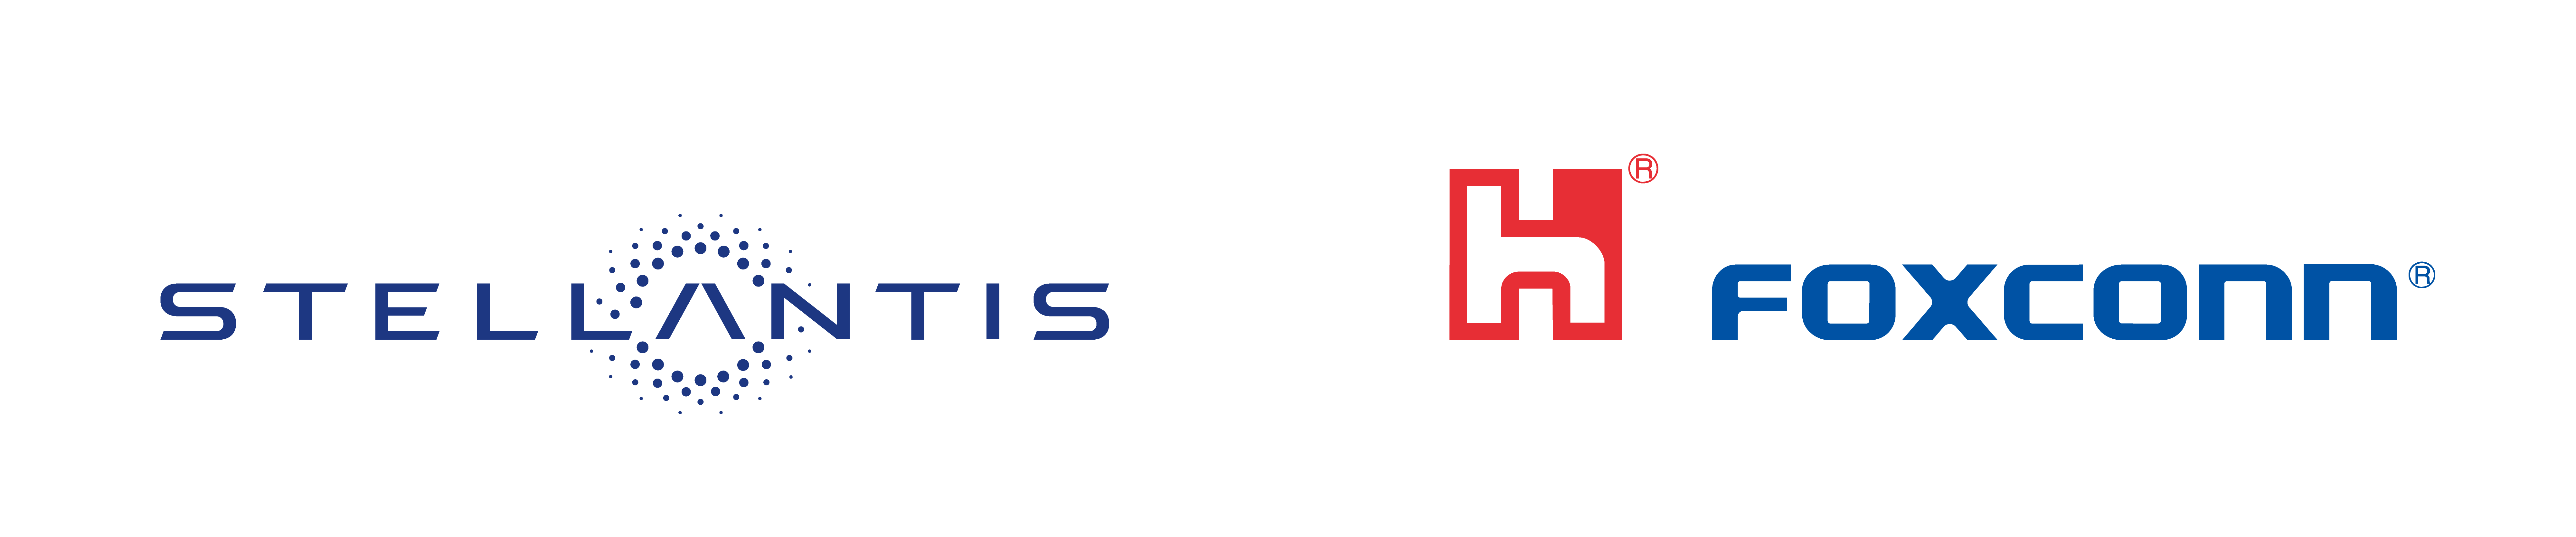 Stellantis-Foxconn Logo